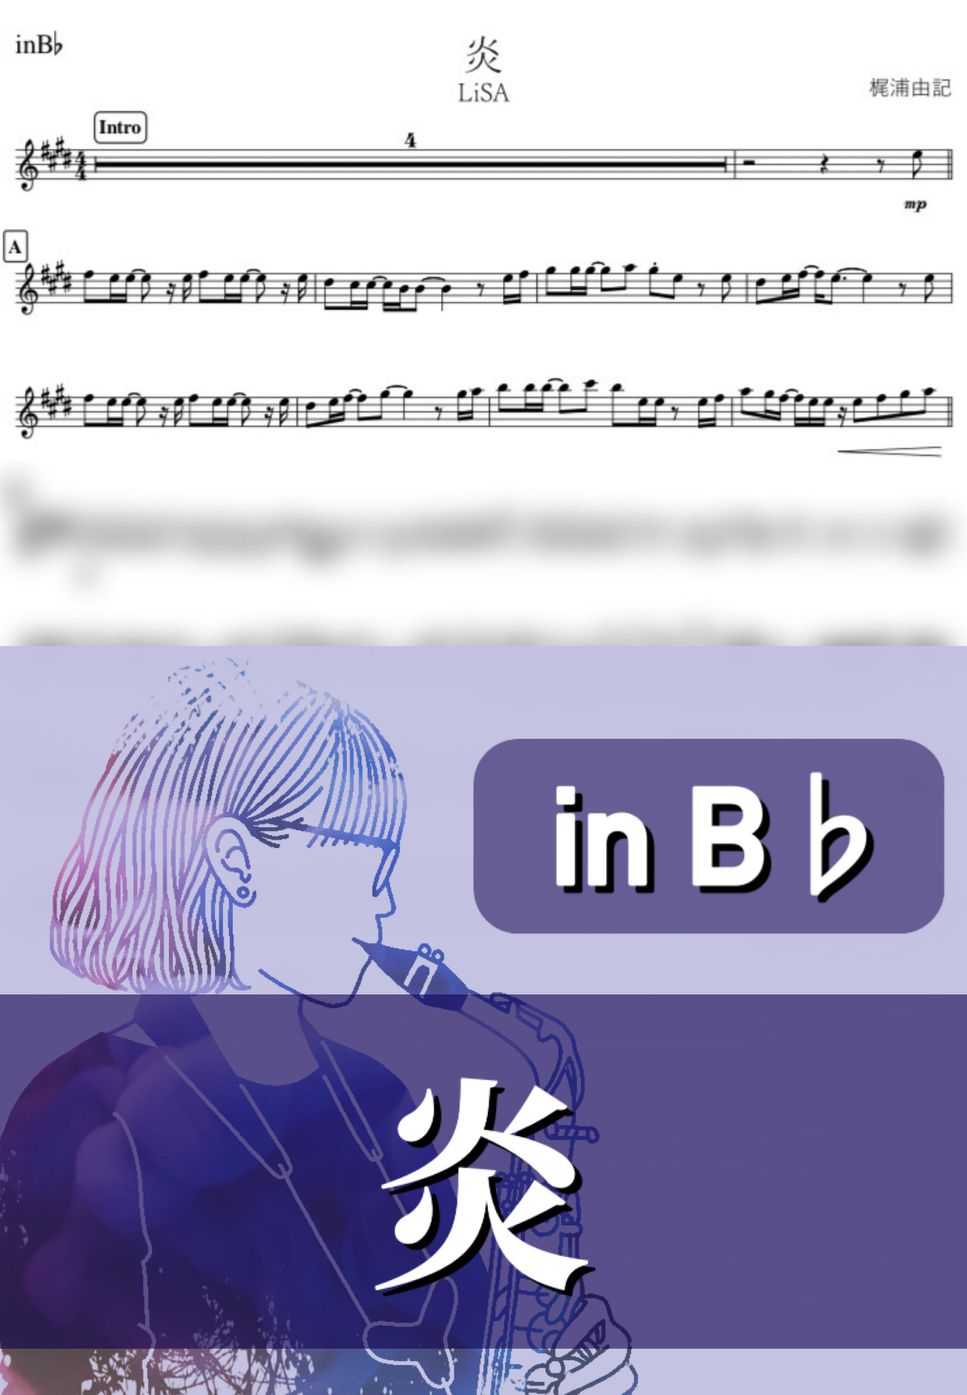 LiSA - 炎 (B♭) by kanamusic